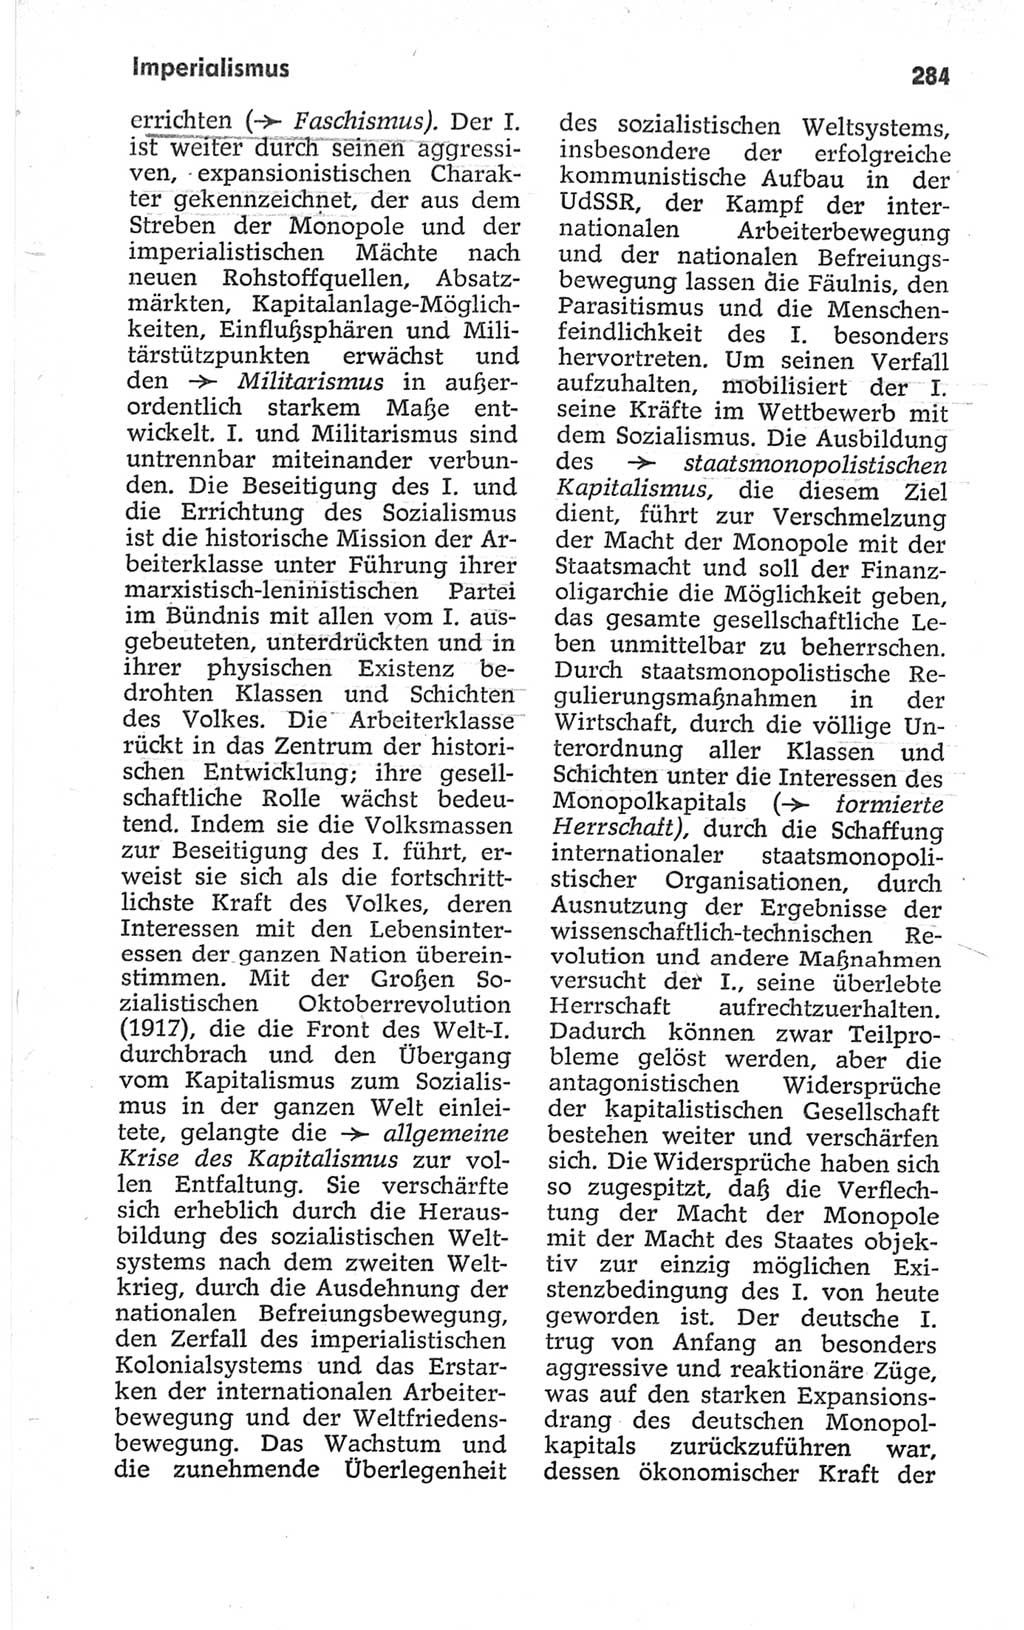 Kleines politisches Wörterbuch [Deutsche Demokratische Republik (DDR)] 1967, Seite 284 (Kl. pol. Wb. DDR 1967, S. 284)